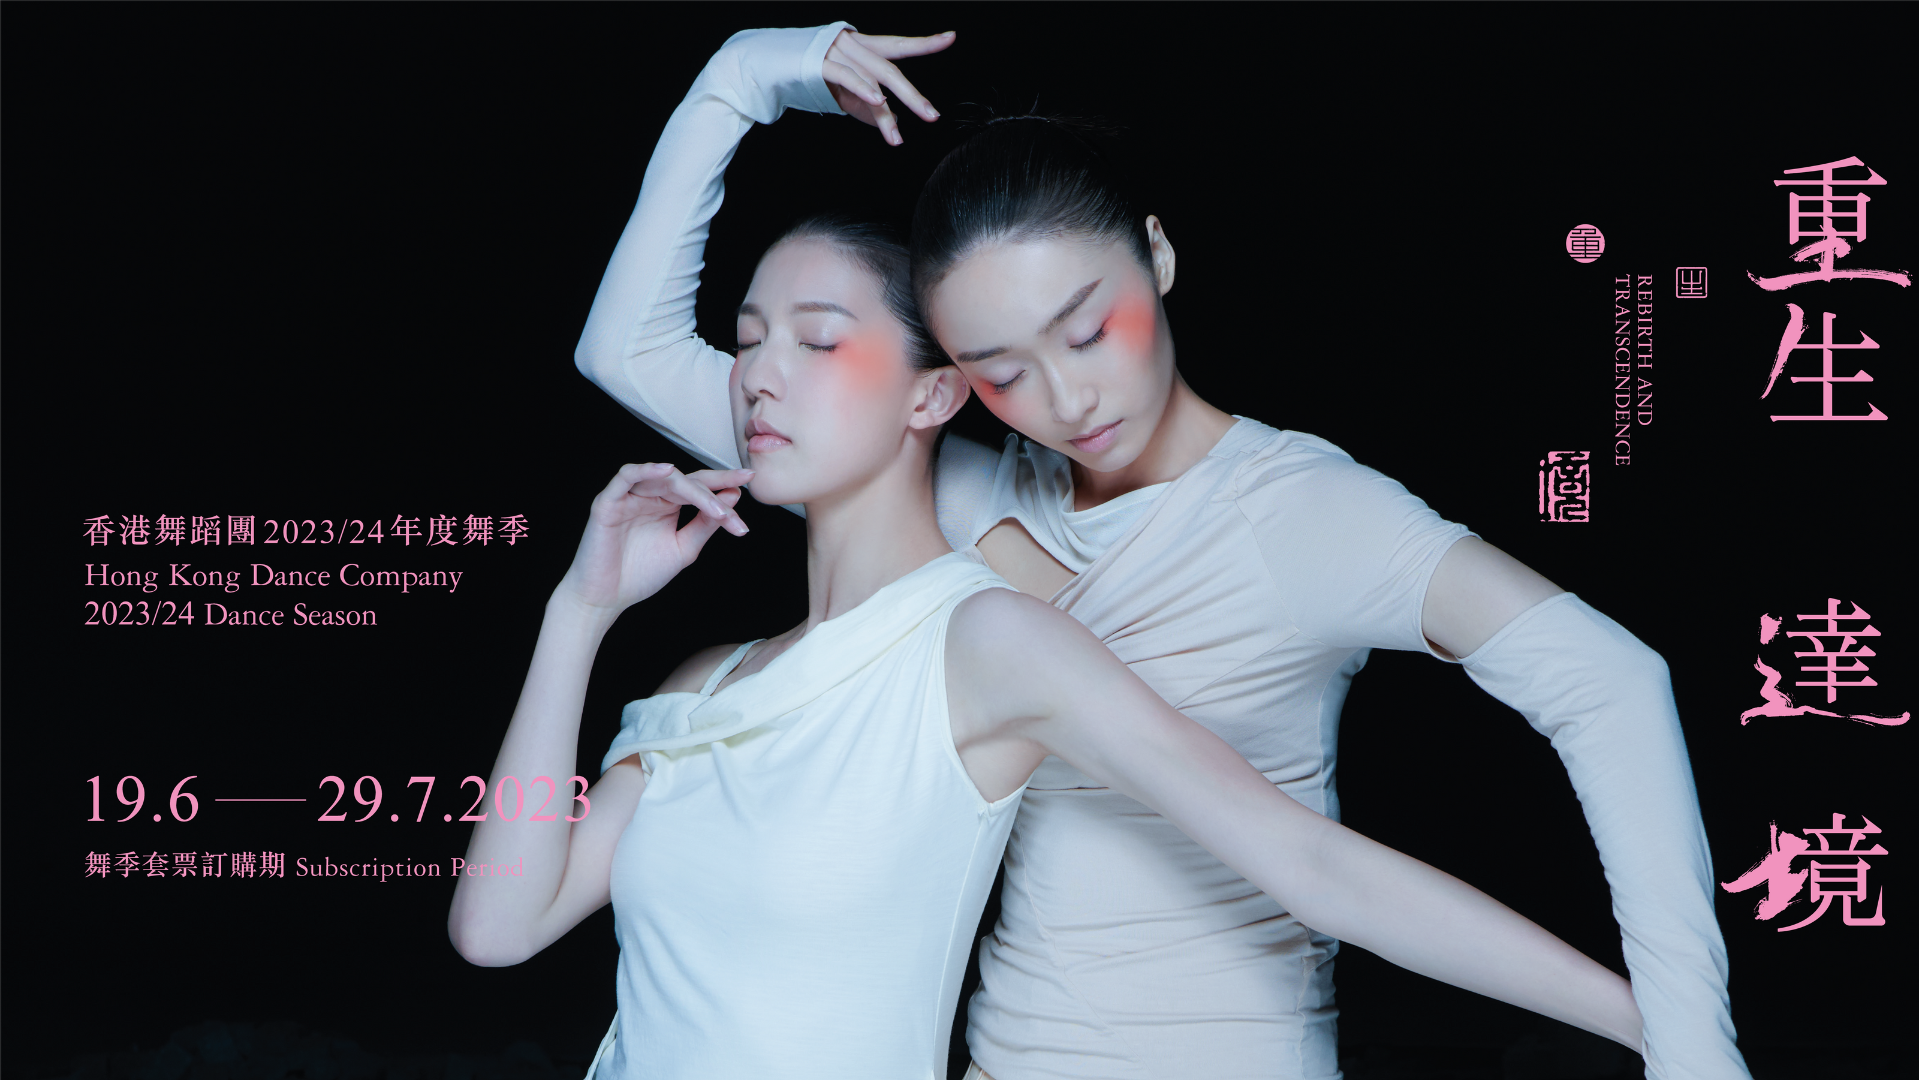 香港舞蹈團 2023/24舞季 照片 1920x1080